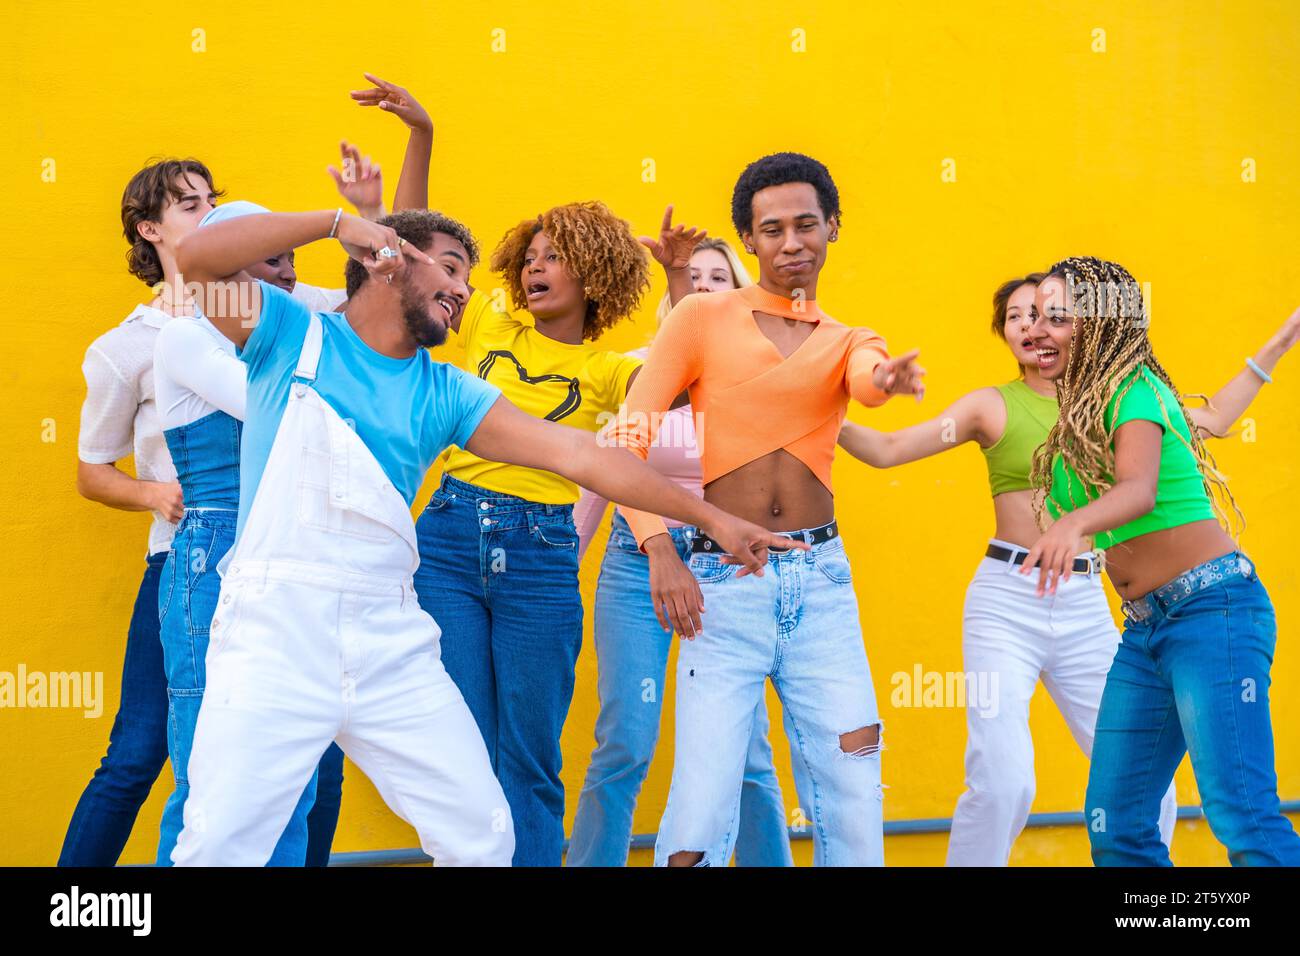 Multikulturelle Gruppe glücklicher Jugendlicher, die in einem gelben städtischen Raum zusammen tanzen Stockfoto